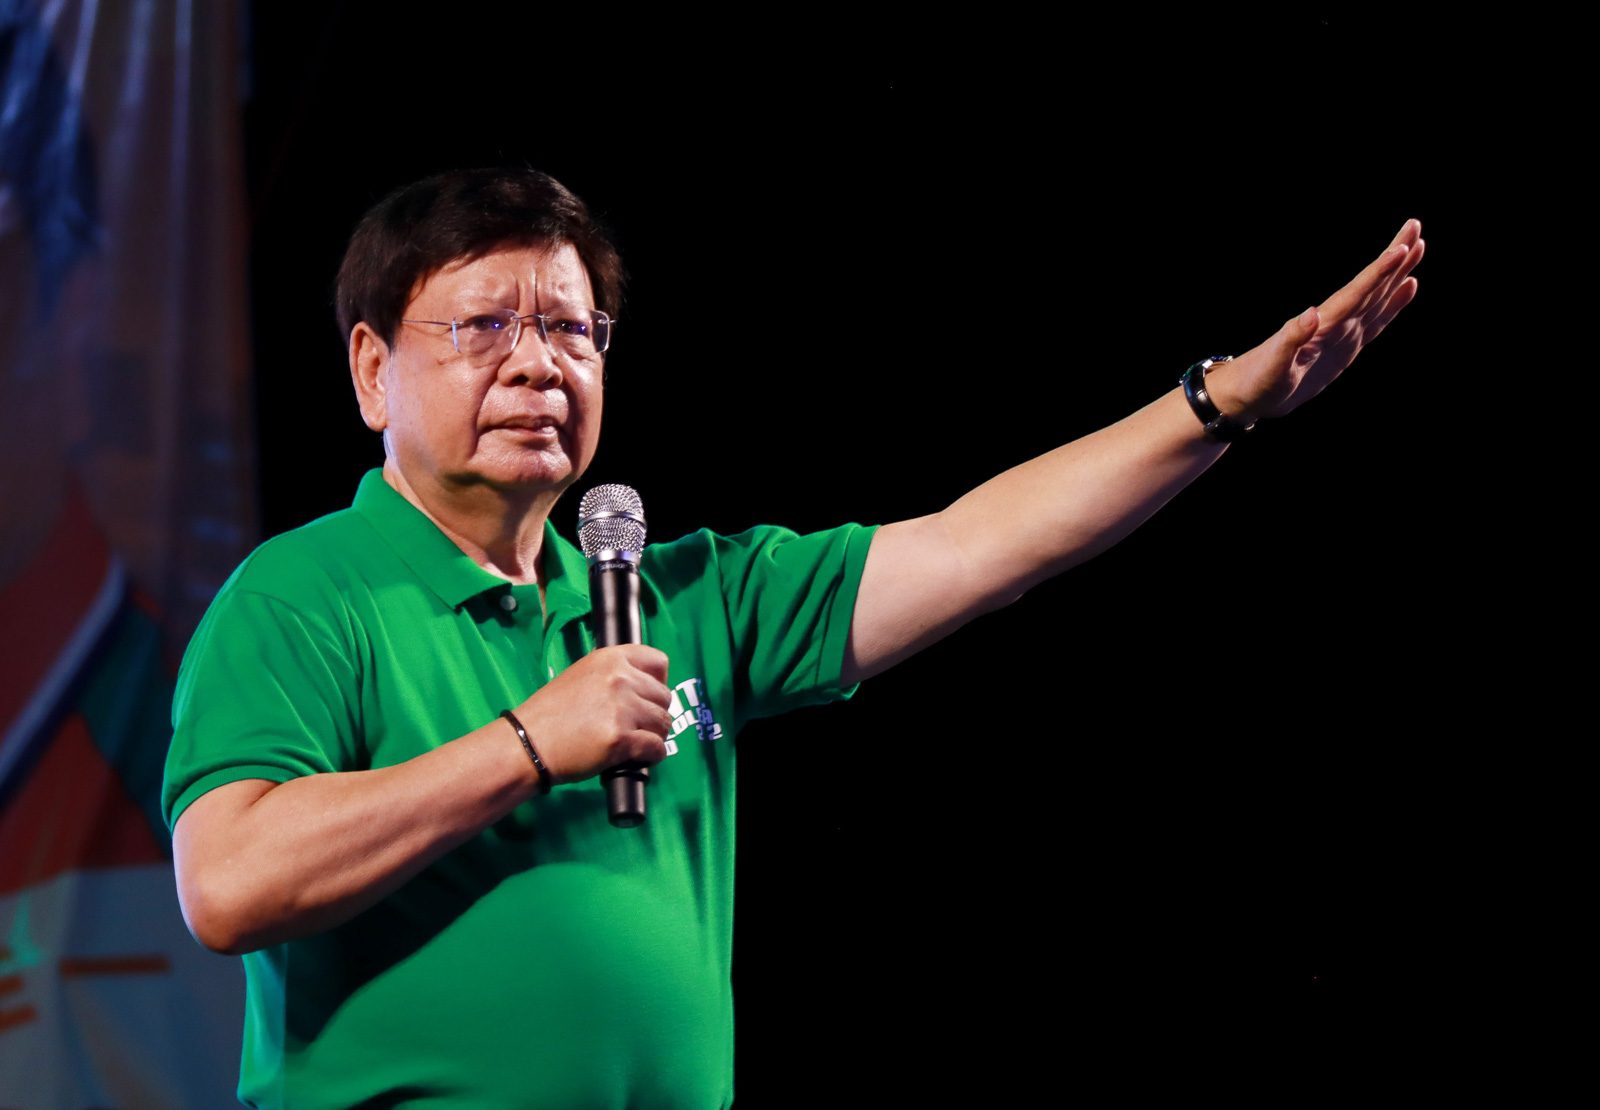 ABS-CBN franchise killer Rodante Marcoleta withdraws from senatorial race